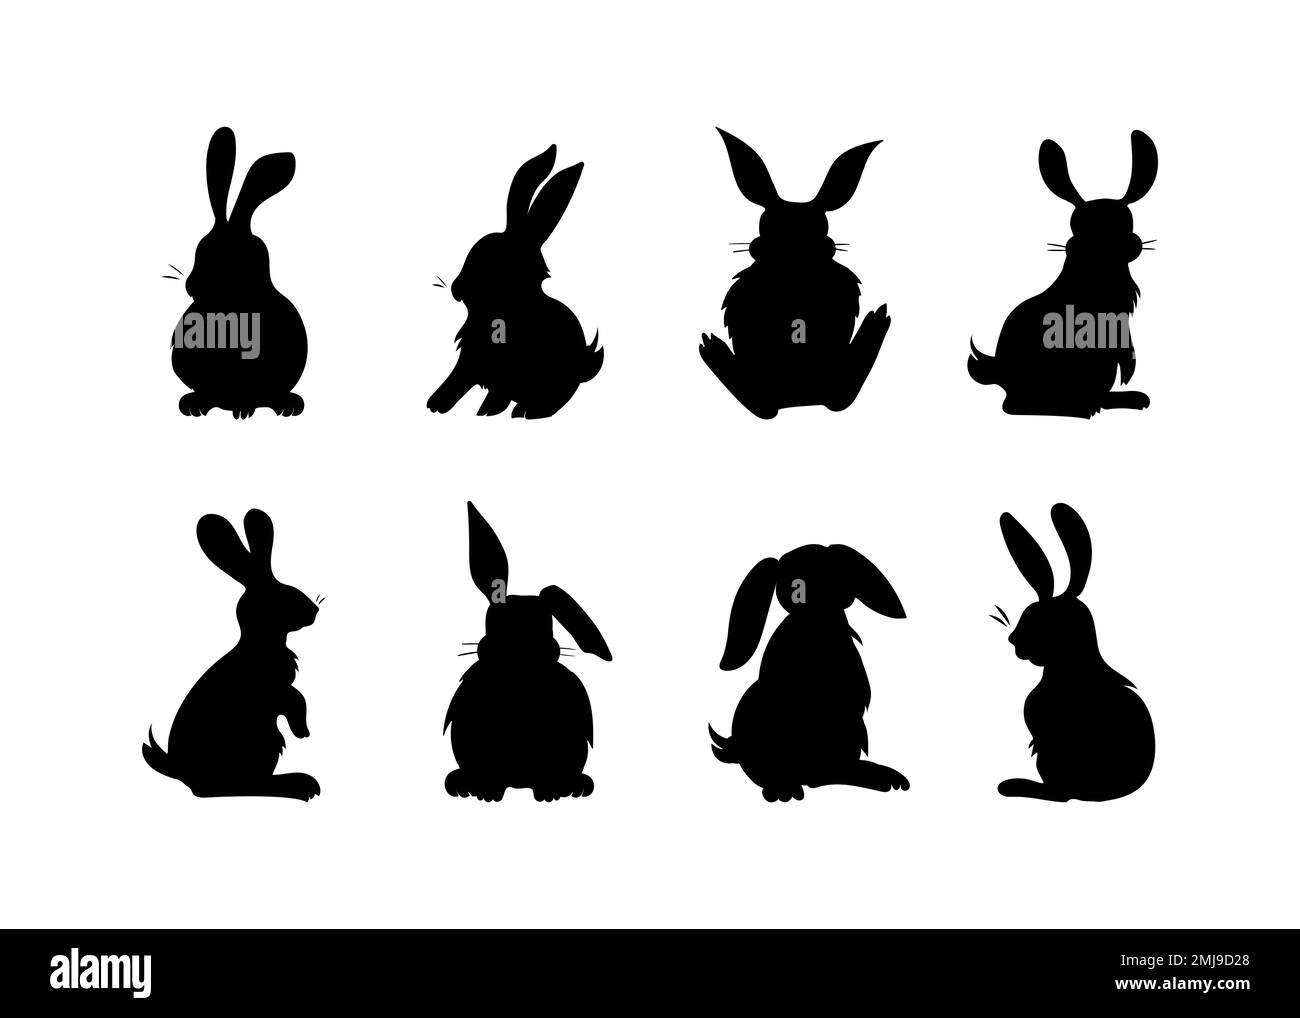 Flauschige Kaninchen-Silhouetten, handgezeichnete Bilder Stock Vektor